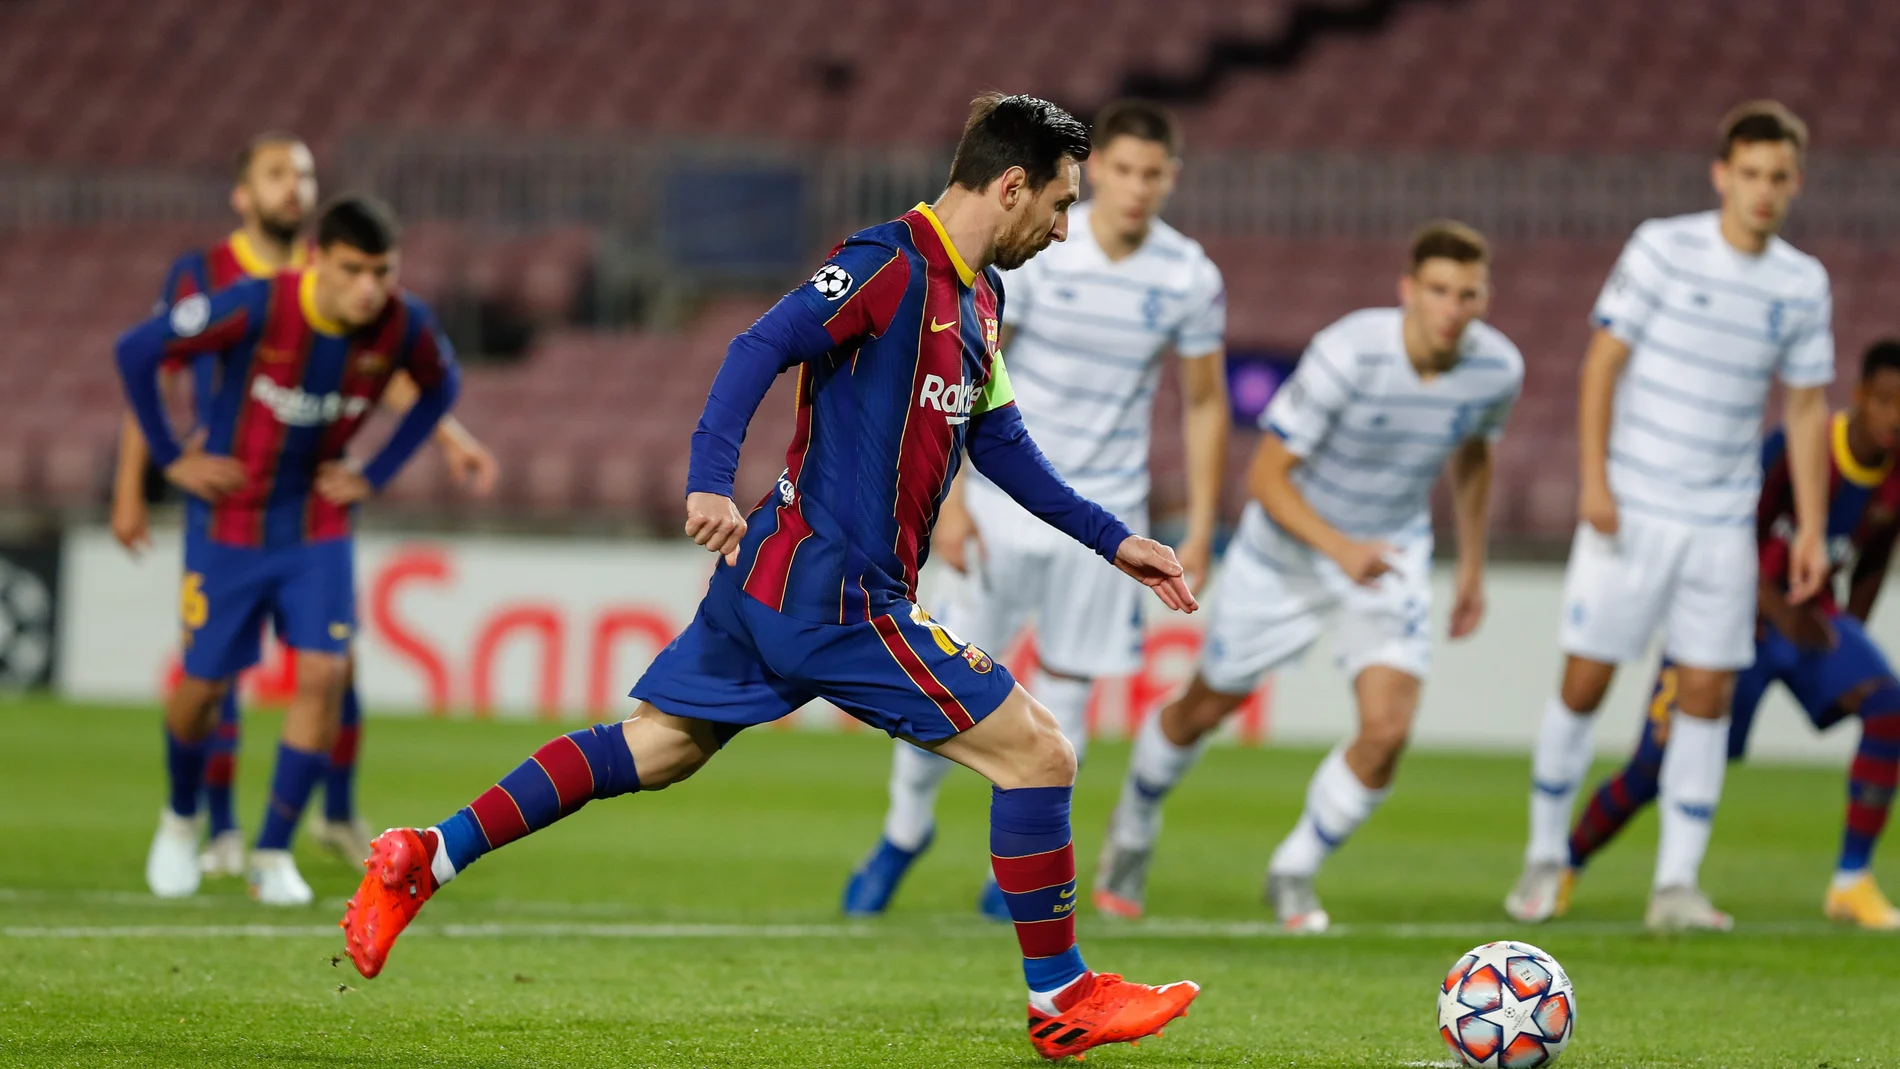 Leo Messi en el momento de lanzar el penalti contra el Dinamo de Kiev.